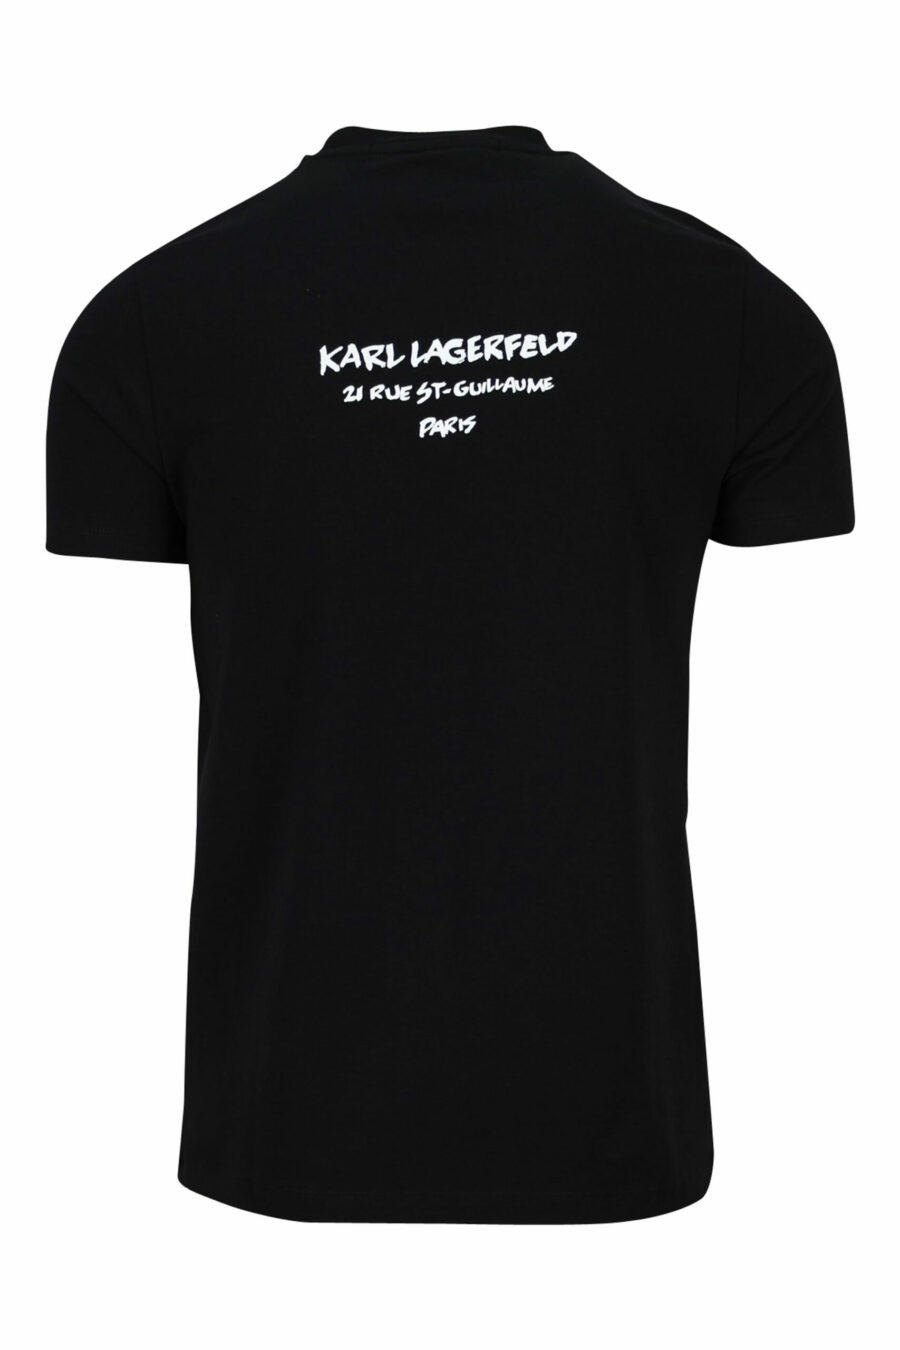 T-shirt preta com perfil de camuflagem "karl" - 4062226401906 1 à escala